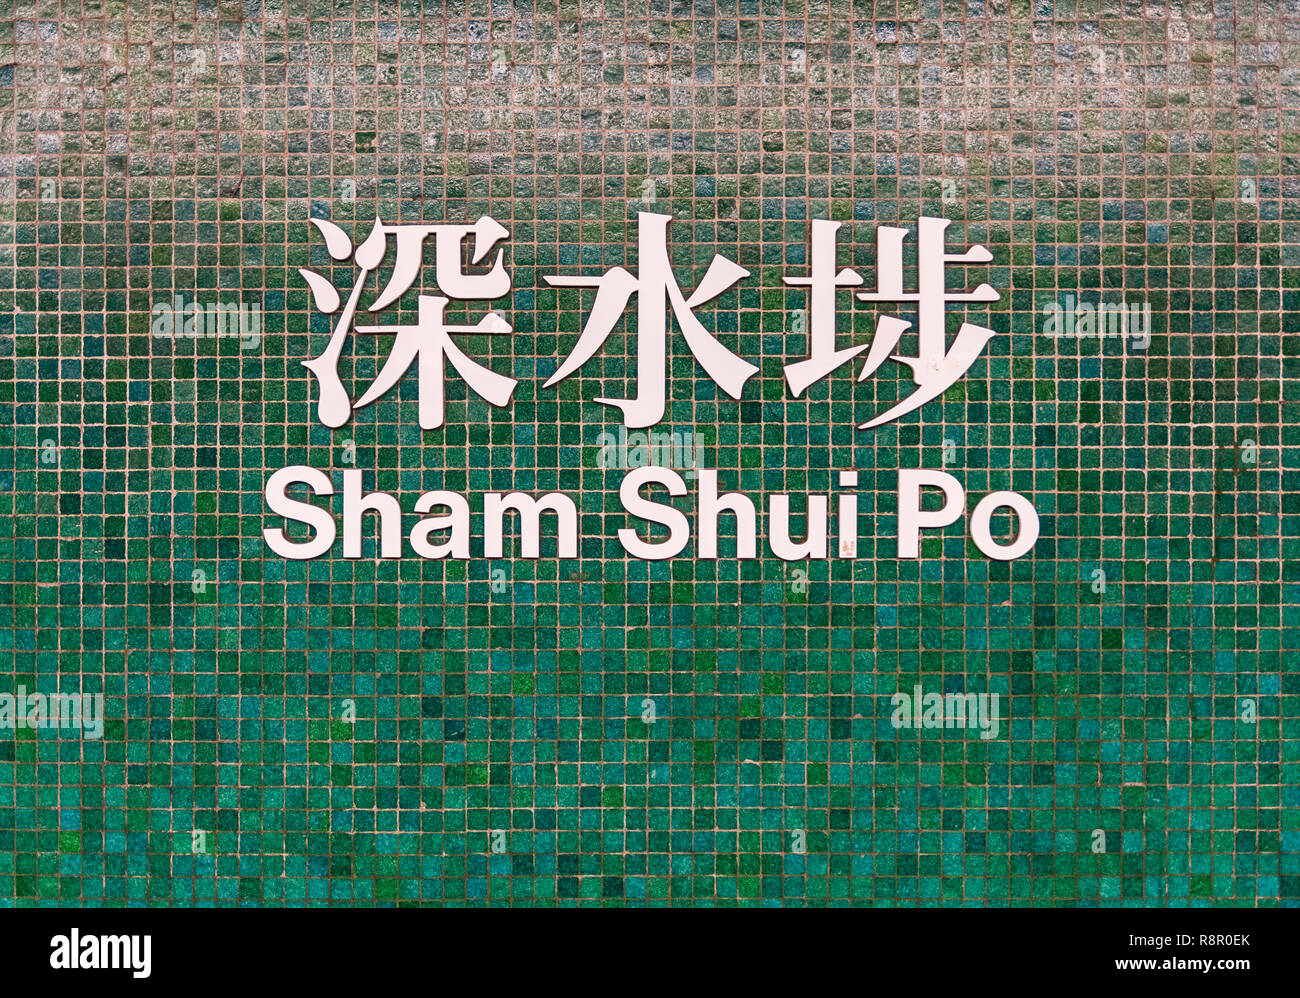 Sham Shui Po signe sur la mosaïque vert mur de la gare MTR Métro, Sham Shui Po, Kowloon, Hong Kong Banque D'Images